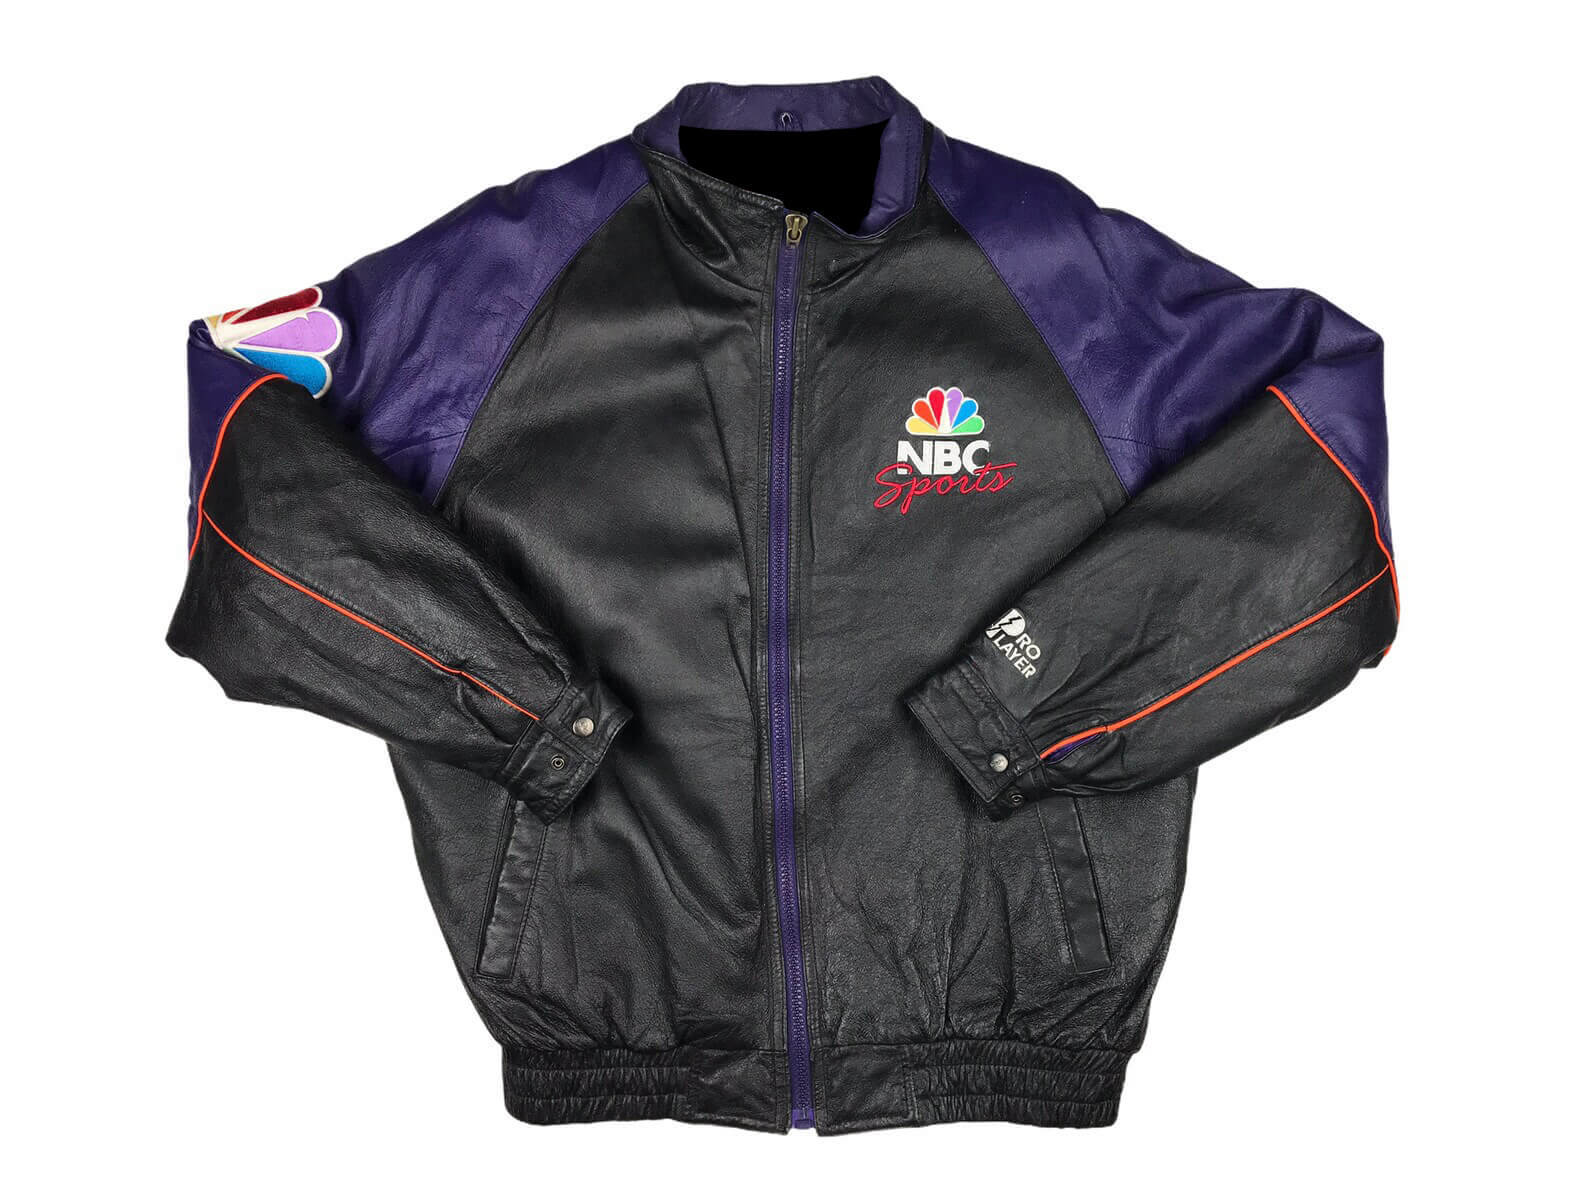 Vintage Starter - Atlanta Braves Hooded Jacket 1990s X-Large